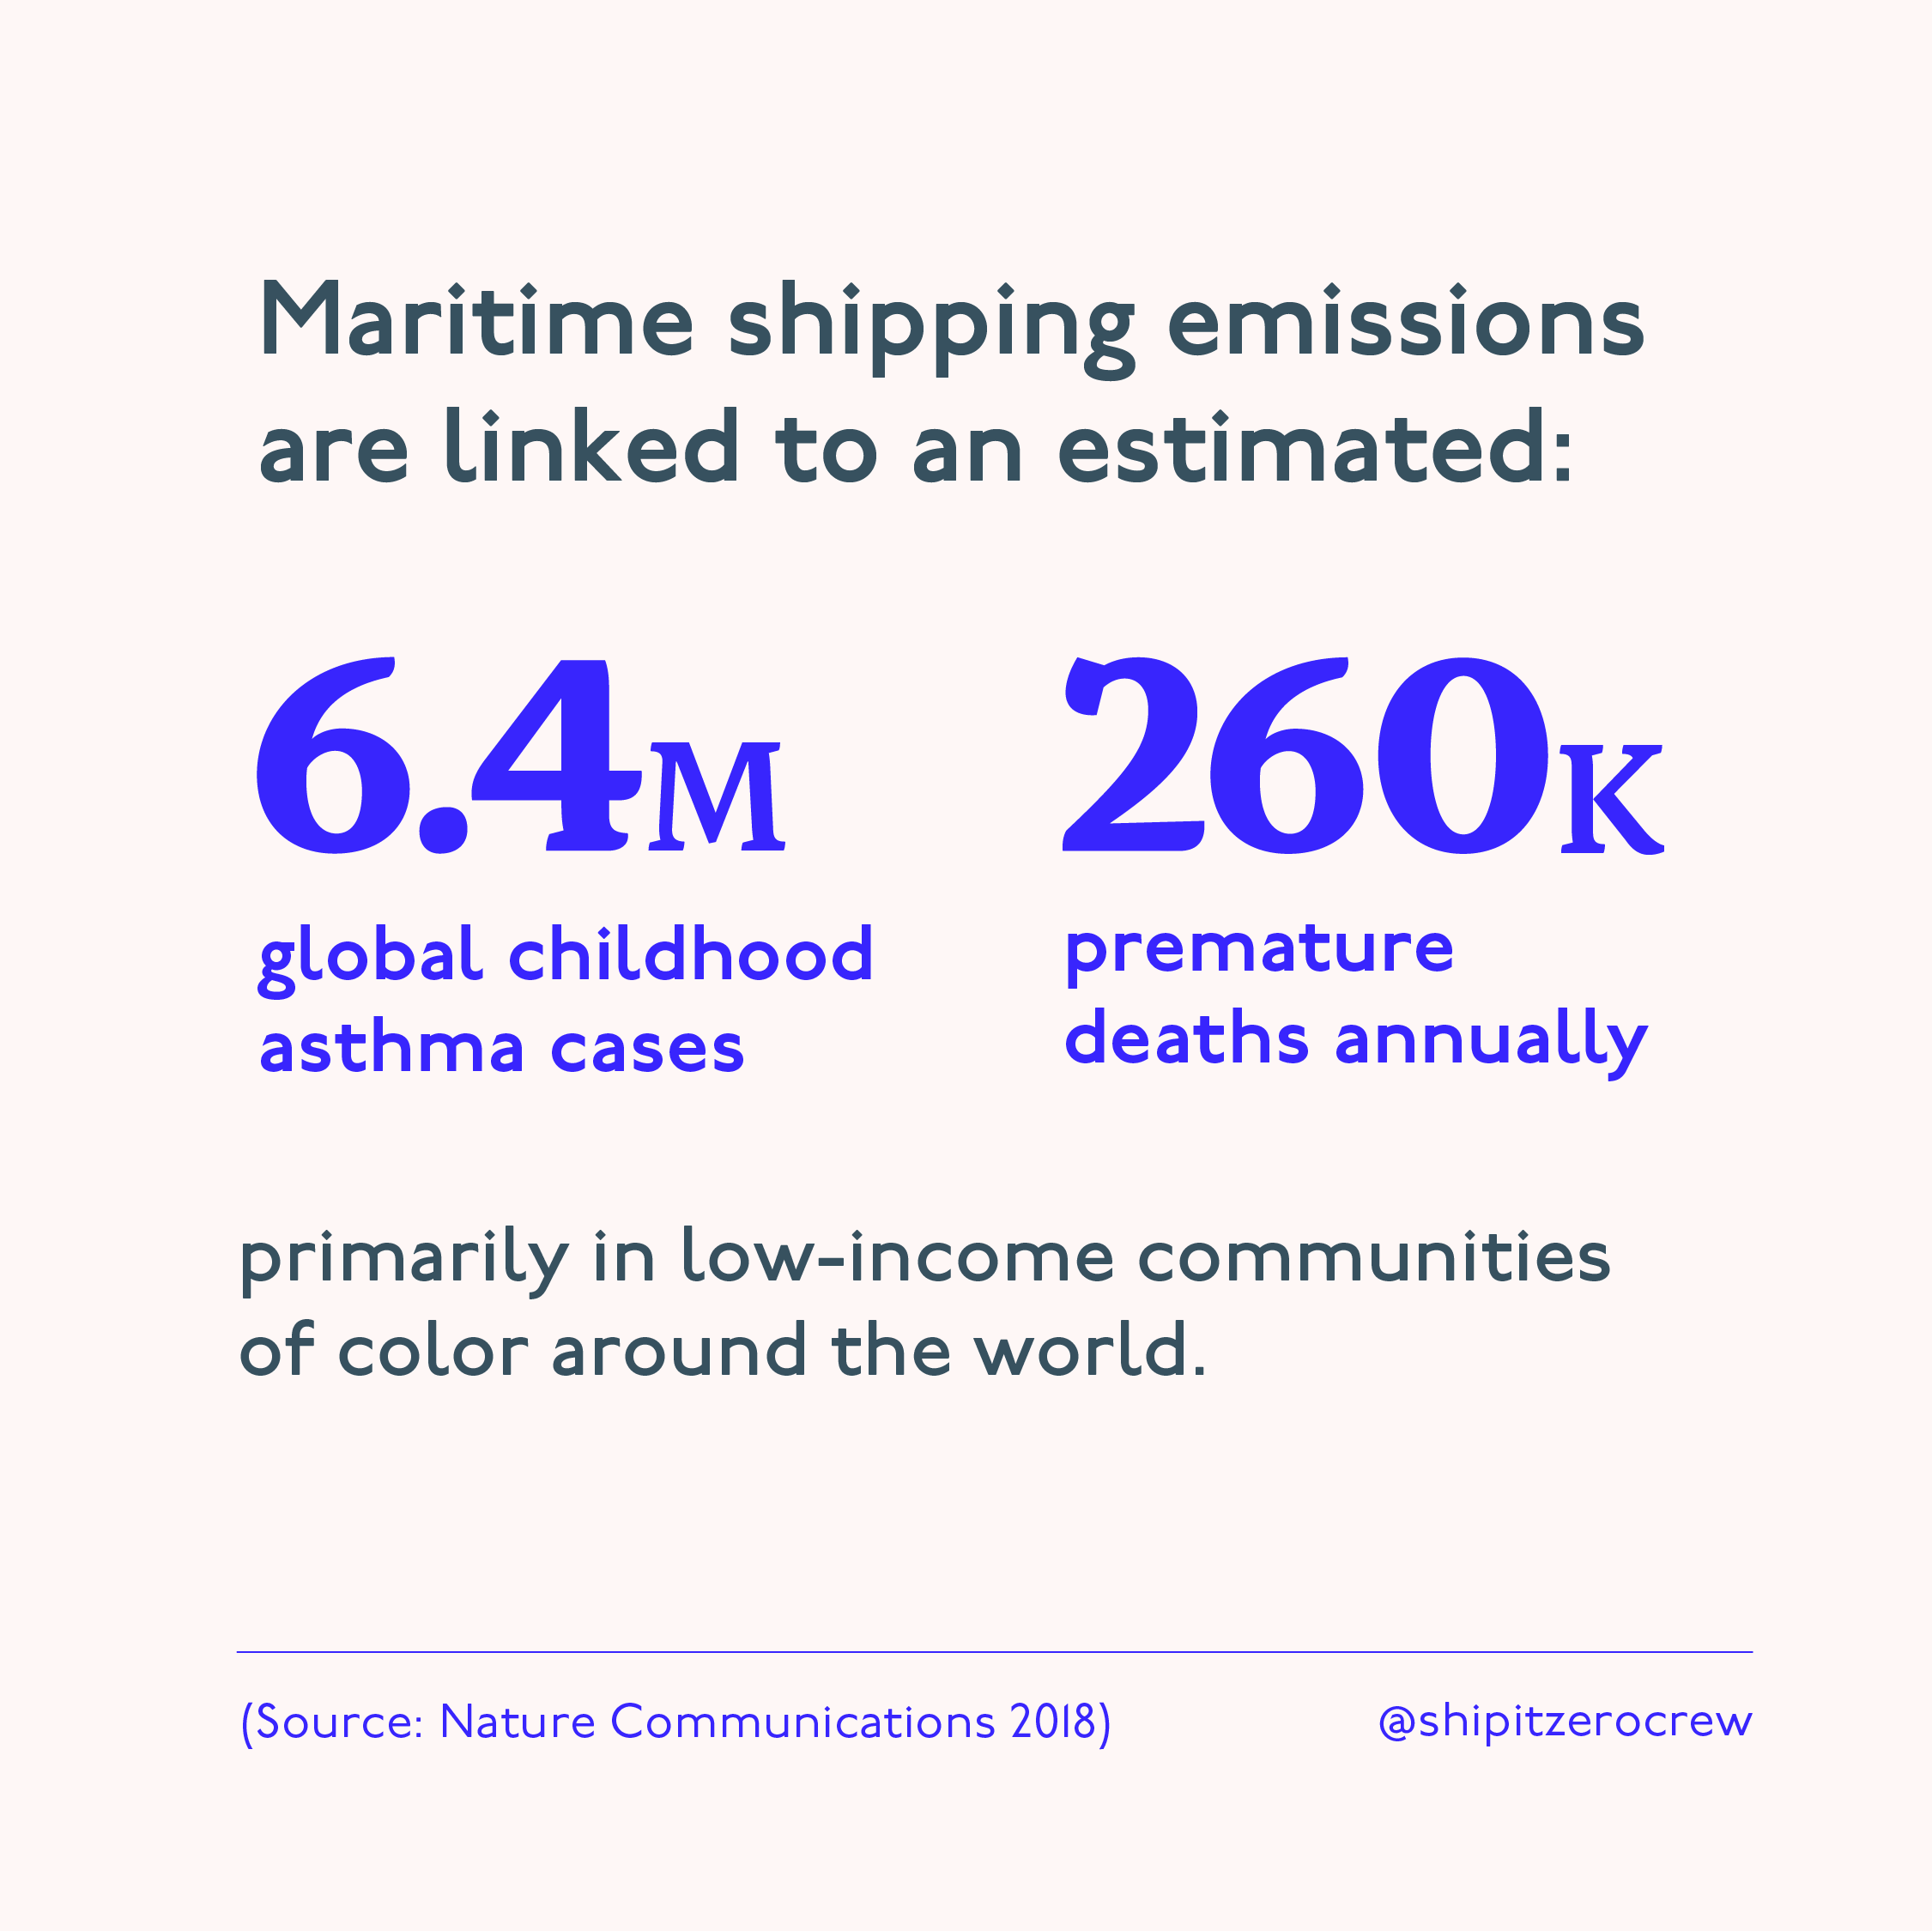 海運の排出物と小児喘息患者および早死にの関連性を推定したグラフィックを公開